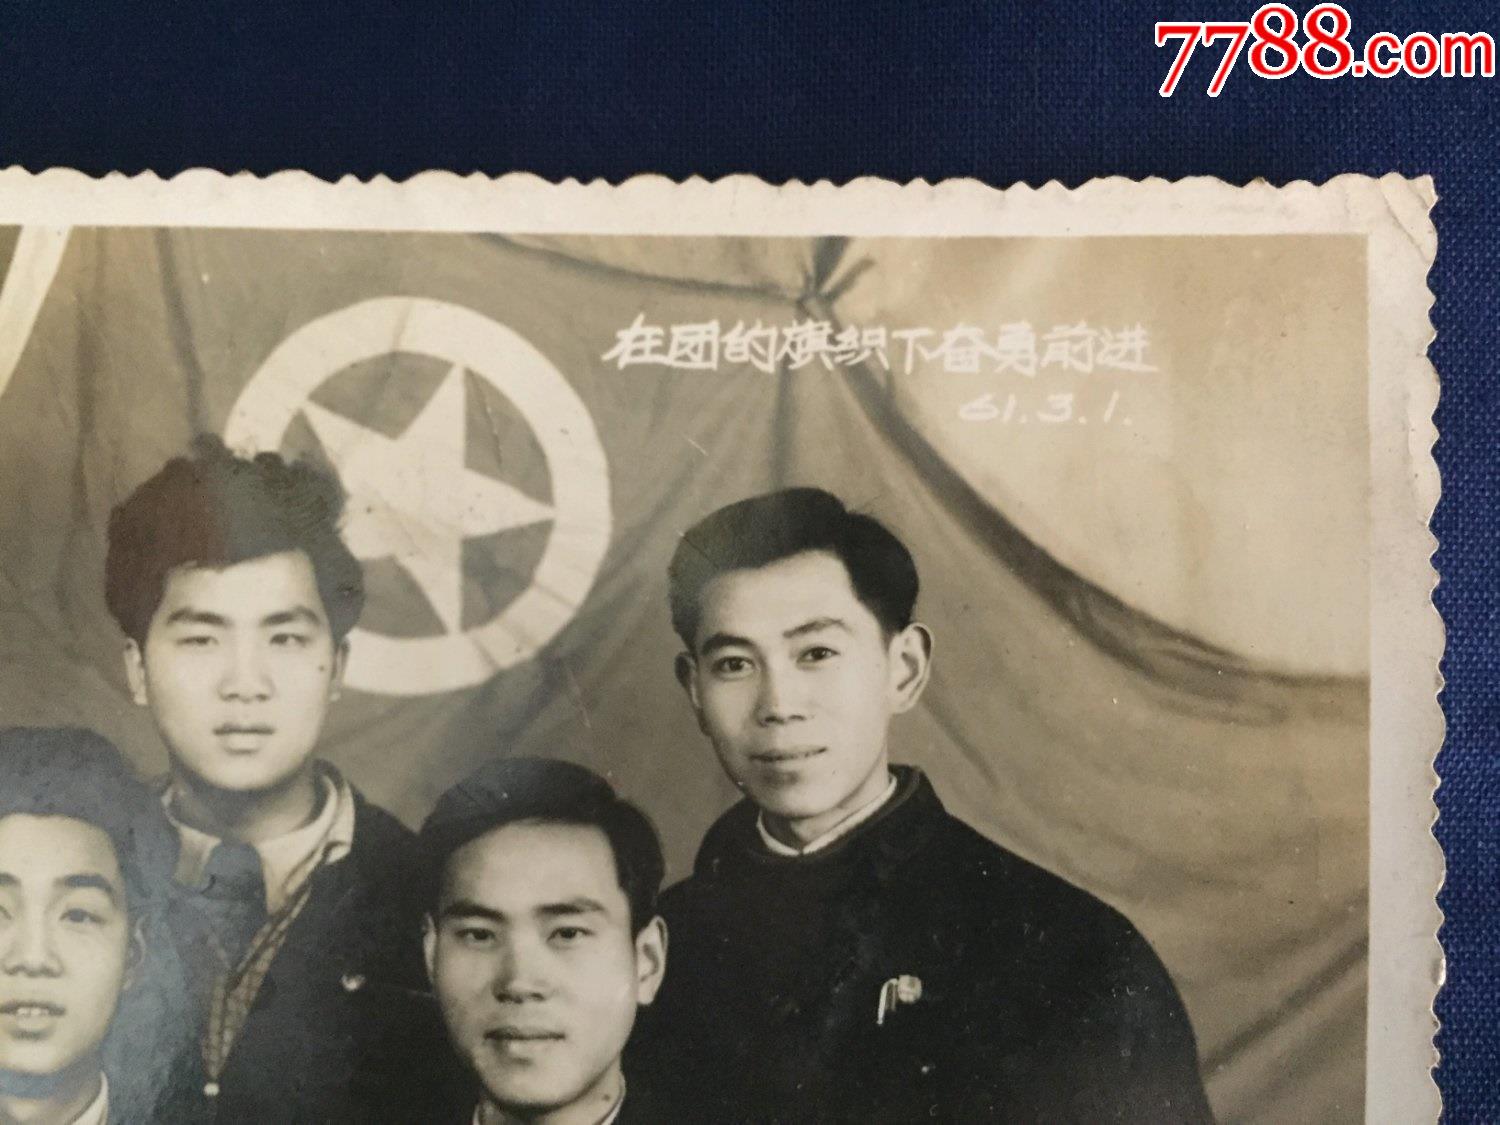 解放初期,60年代,1961年,老照片,原版照片,共青团:在团的旗帜下奋勇